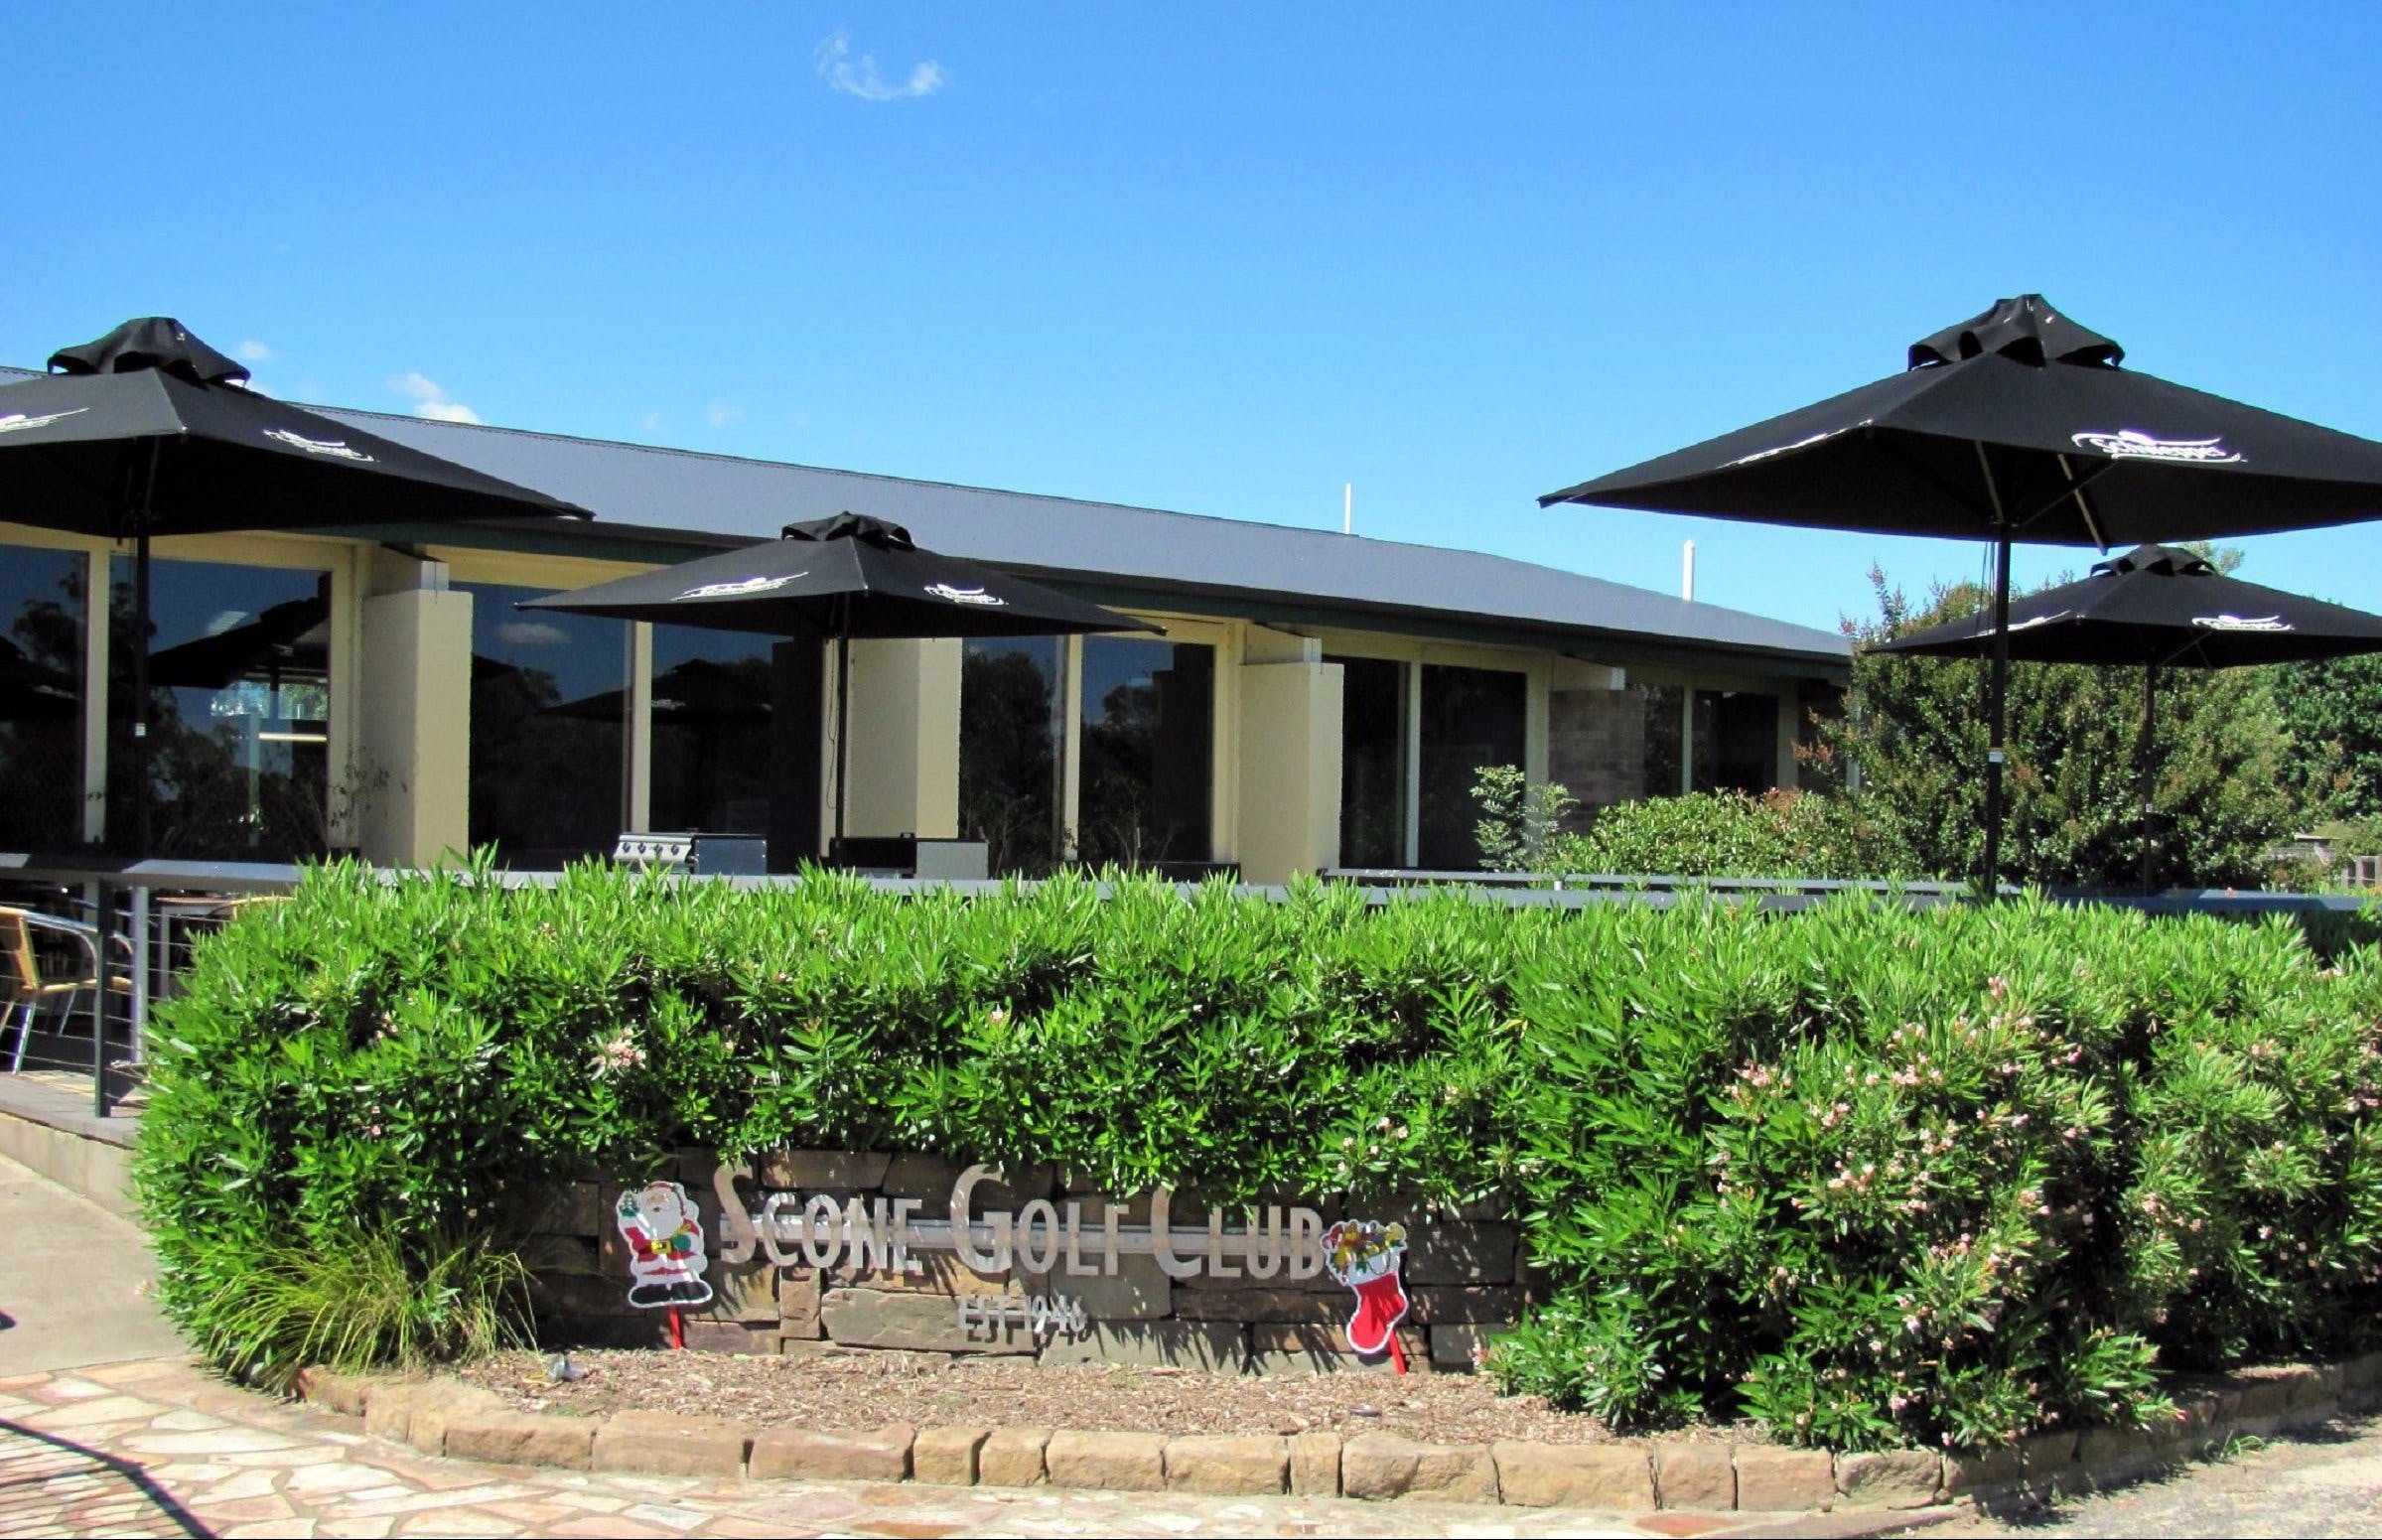 Scone Golf Club - Wagga Wagga Accommodation